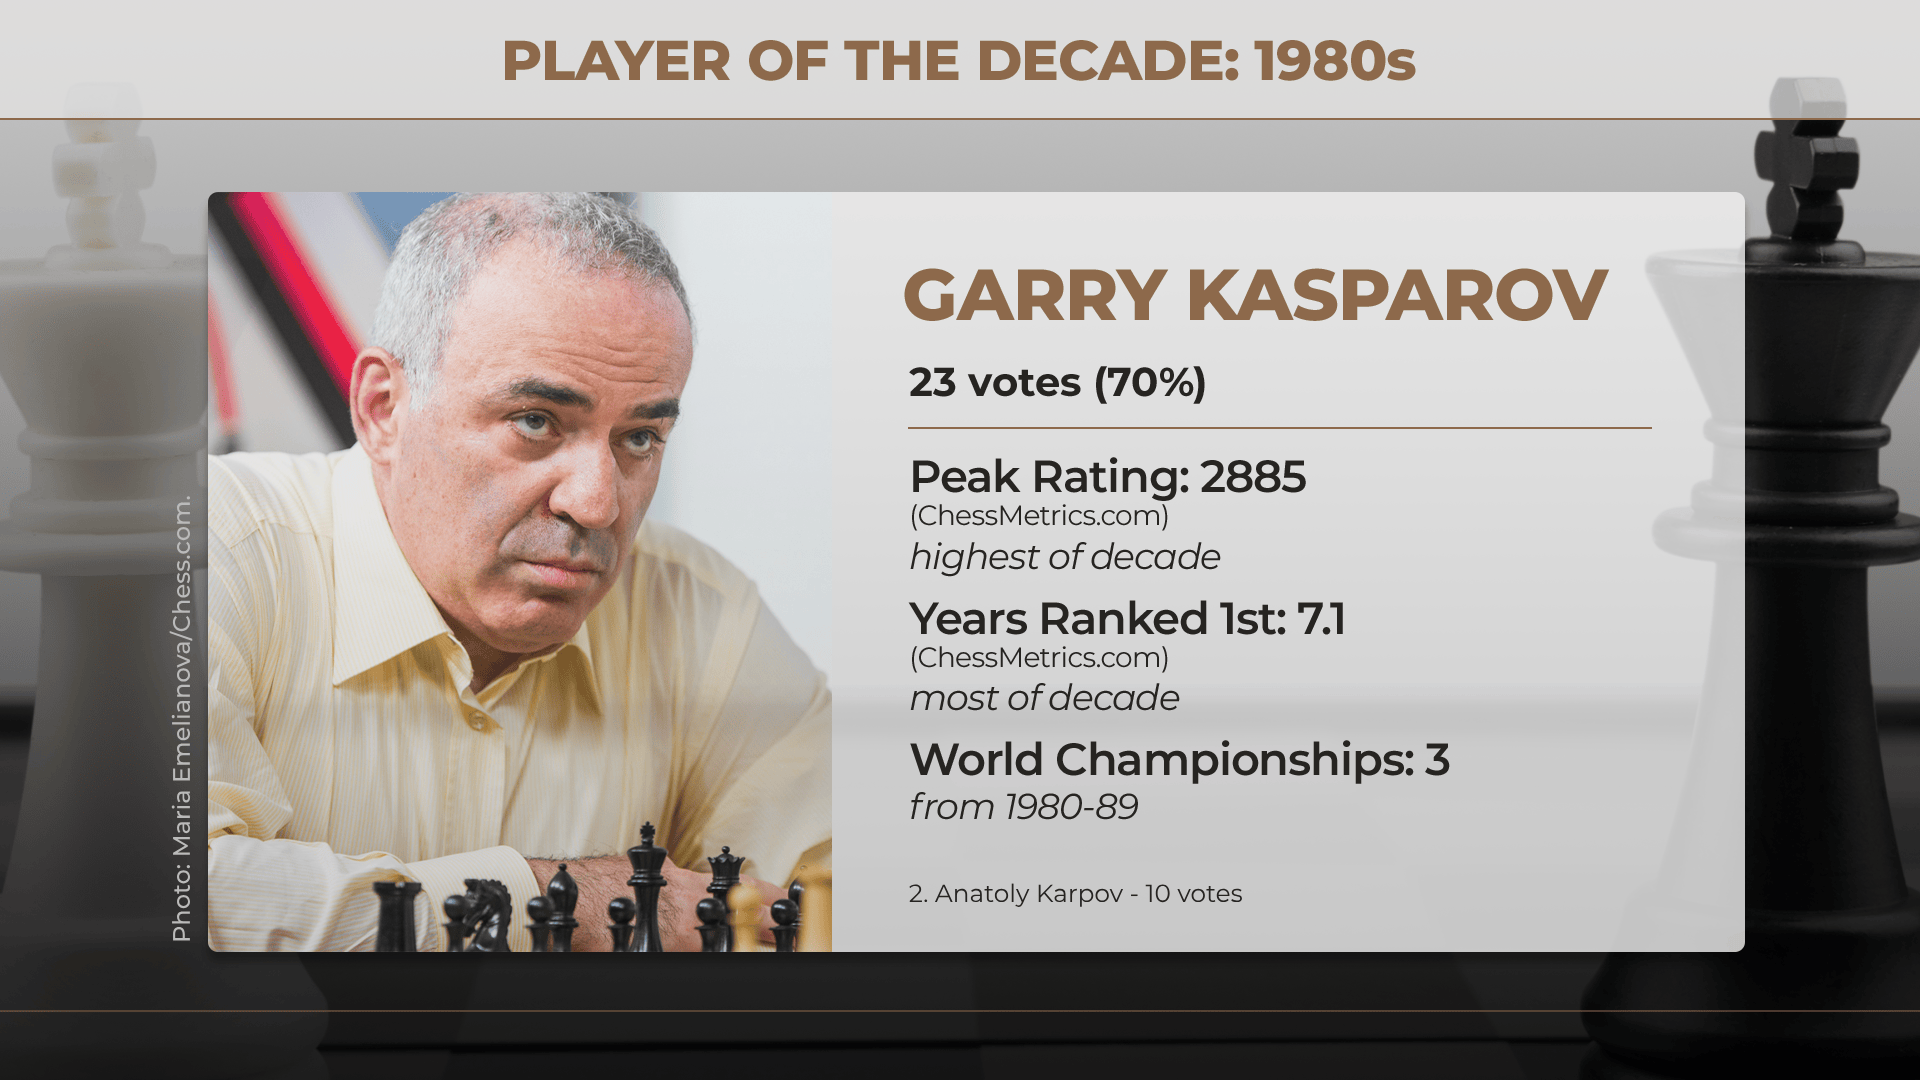 10 reasons the '78 Karpov – Korchnoi chess match was weirdest ever